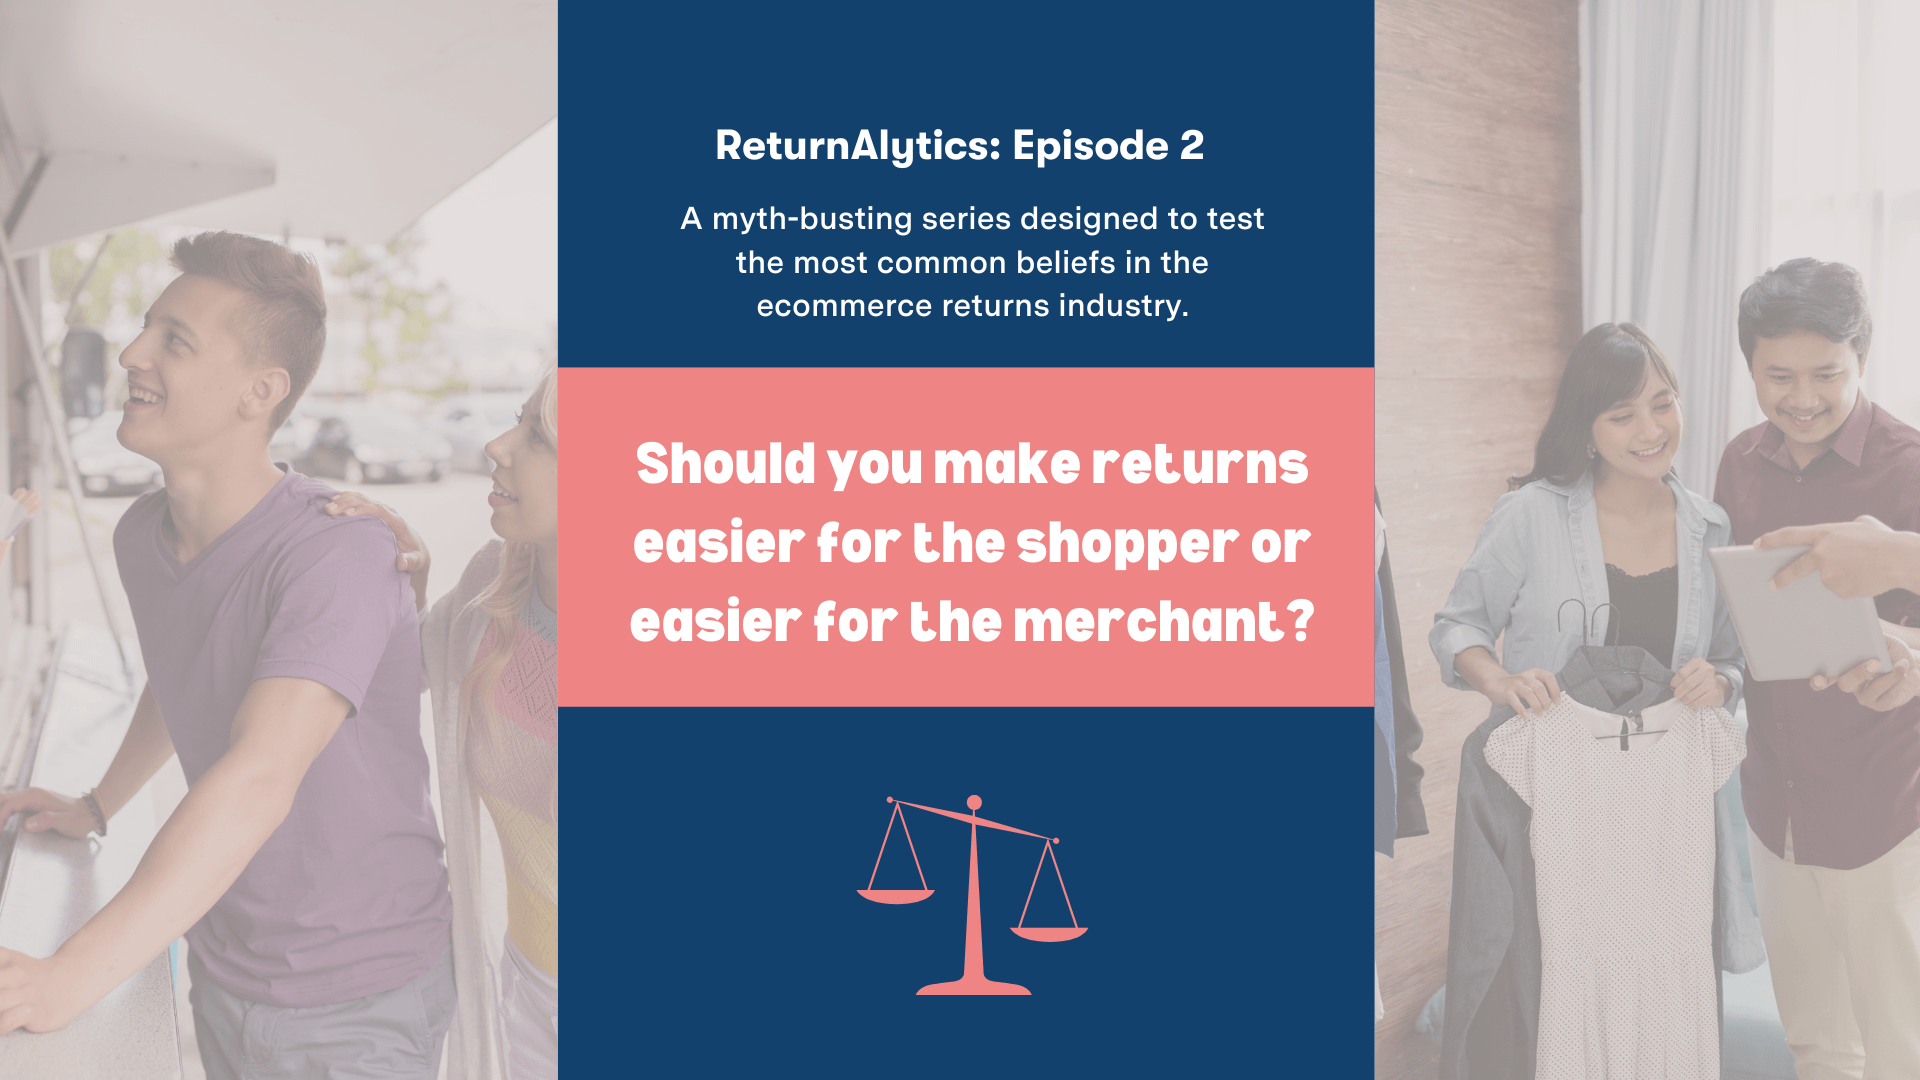 Returnalytics: Should You Make Returns Easier for Shoppers or Easier for Merchants?